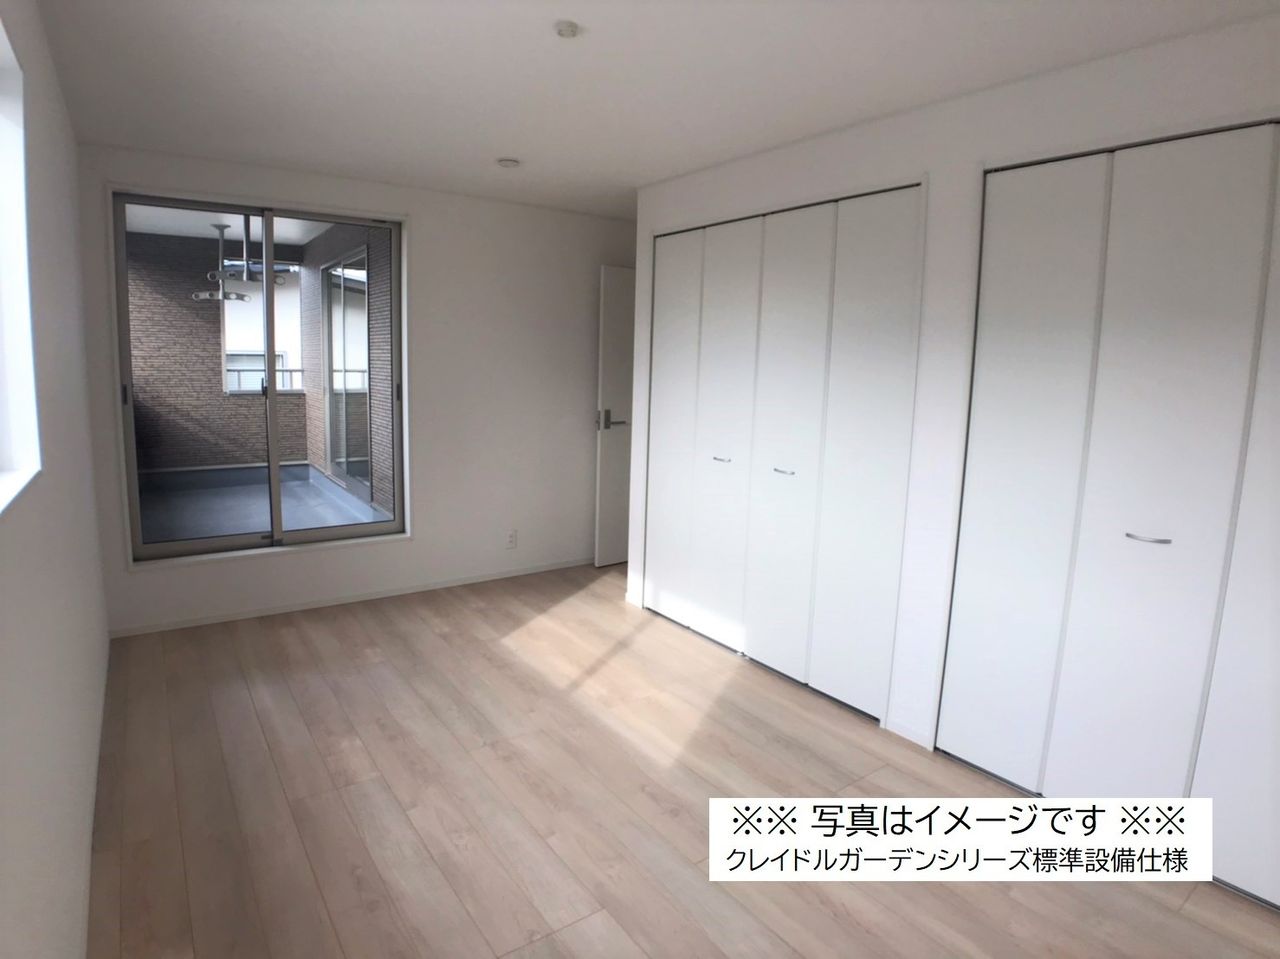 【類似物件参考写真：洋室】優しいベージュの床板とホワイトカラーでほっとするマイルームになりそうですね。クローゼットは全居室にあります。